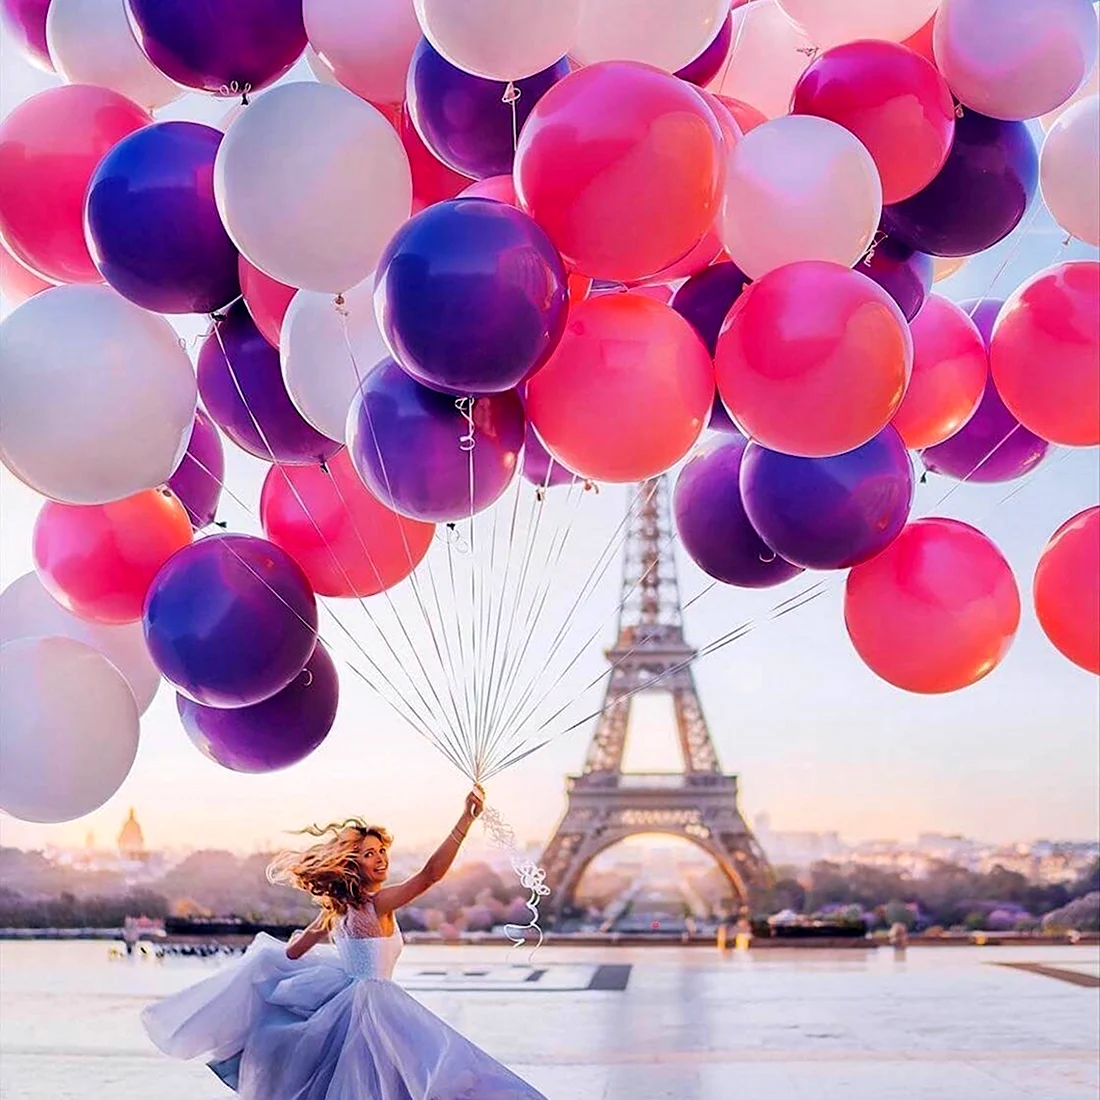 Алмазная мозаика девушка с шарами в Париже